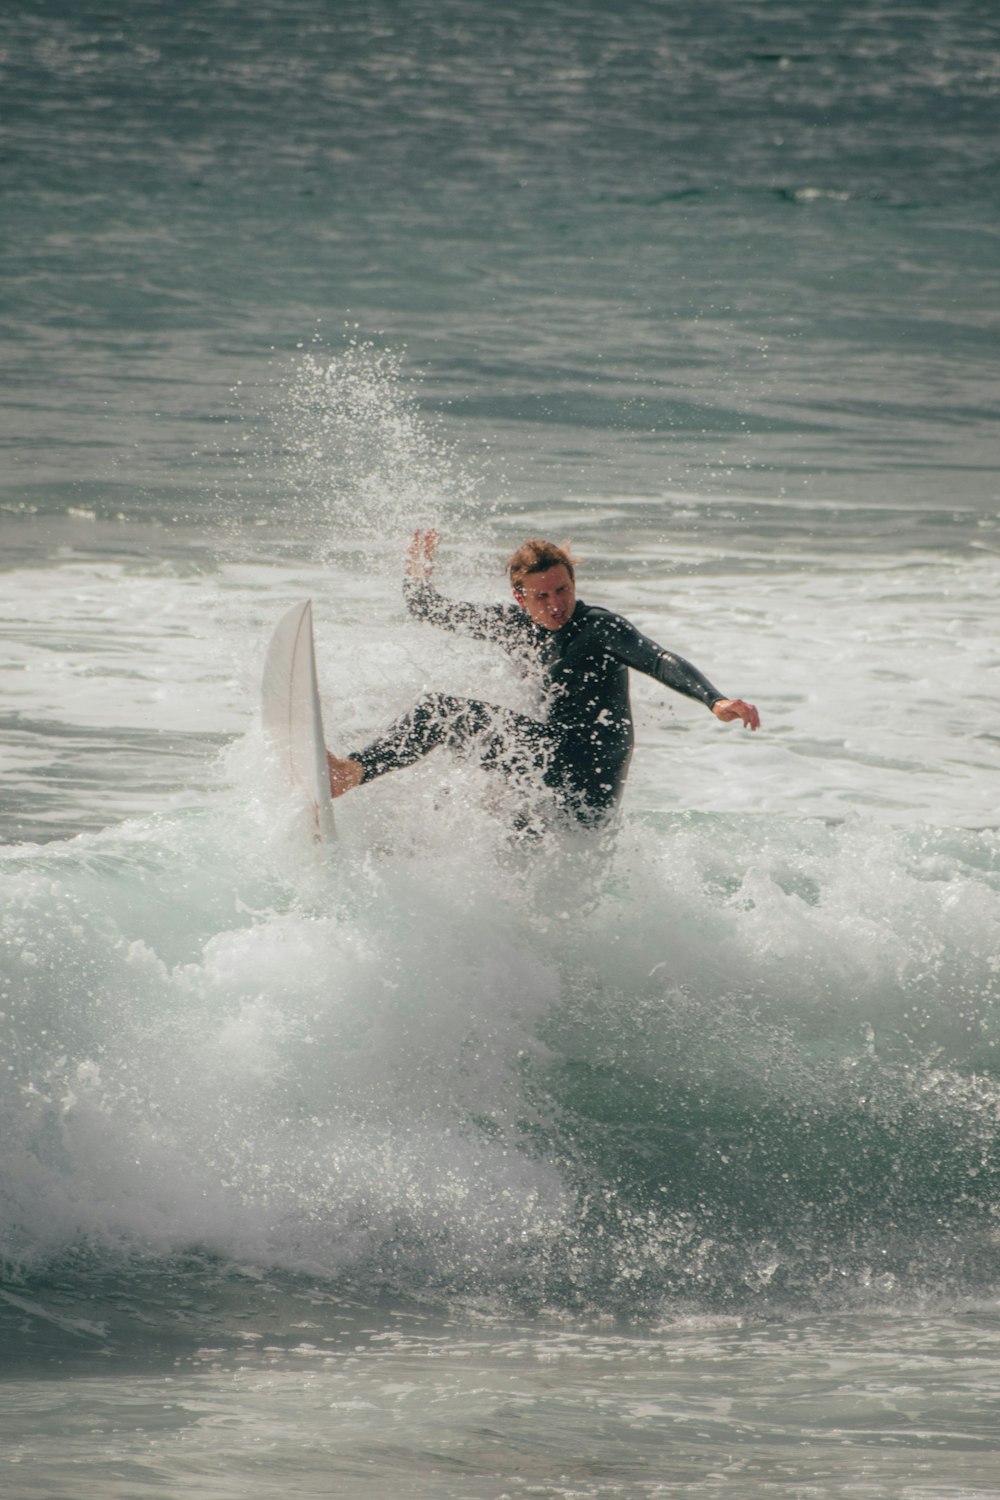 昼間、海の波でサーフィンをする黒いウェットスーツを着た男